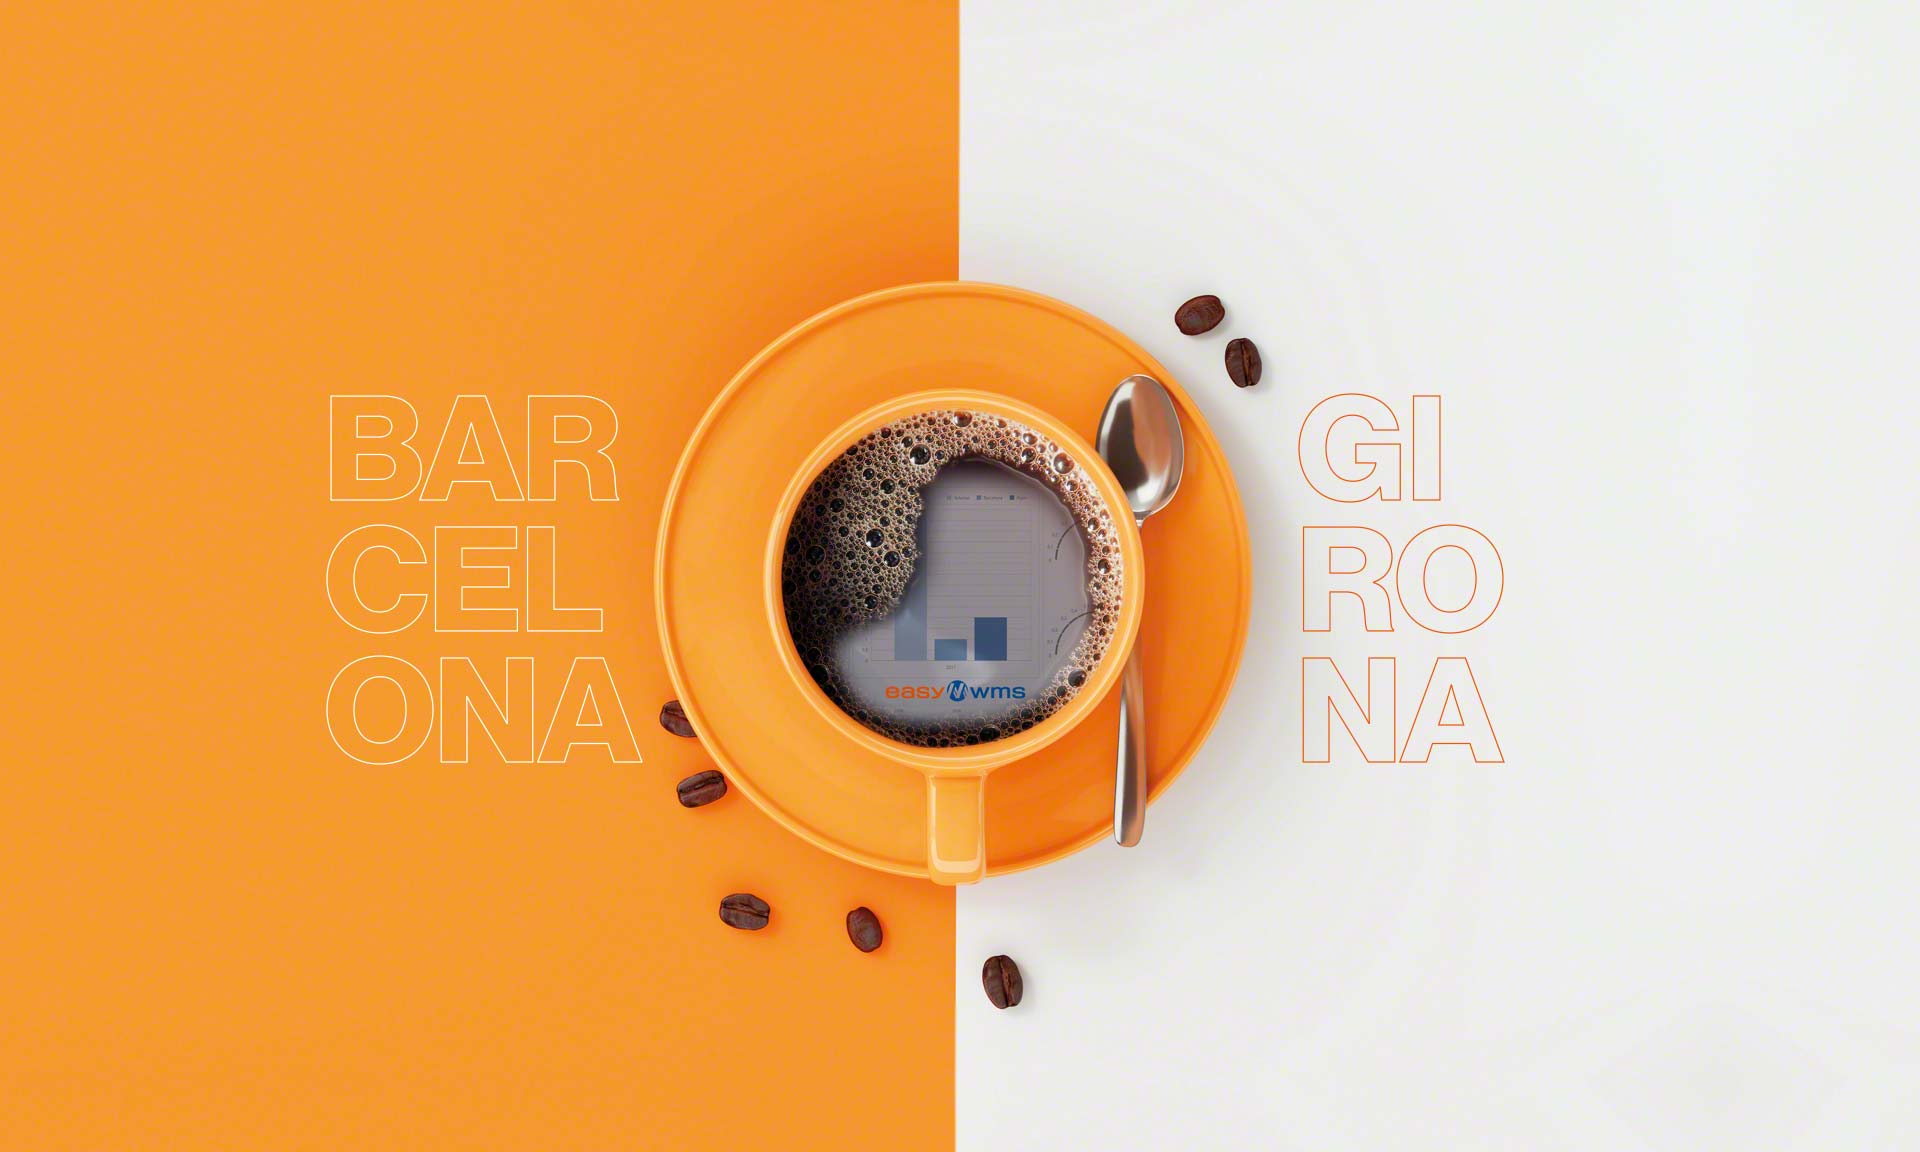 As máquinas de café La Spaziale, líderes no setor de horeca, inauguram armazém em Girona